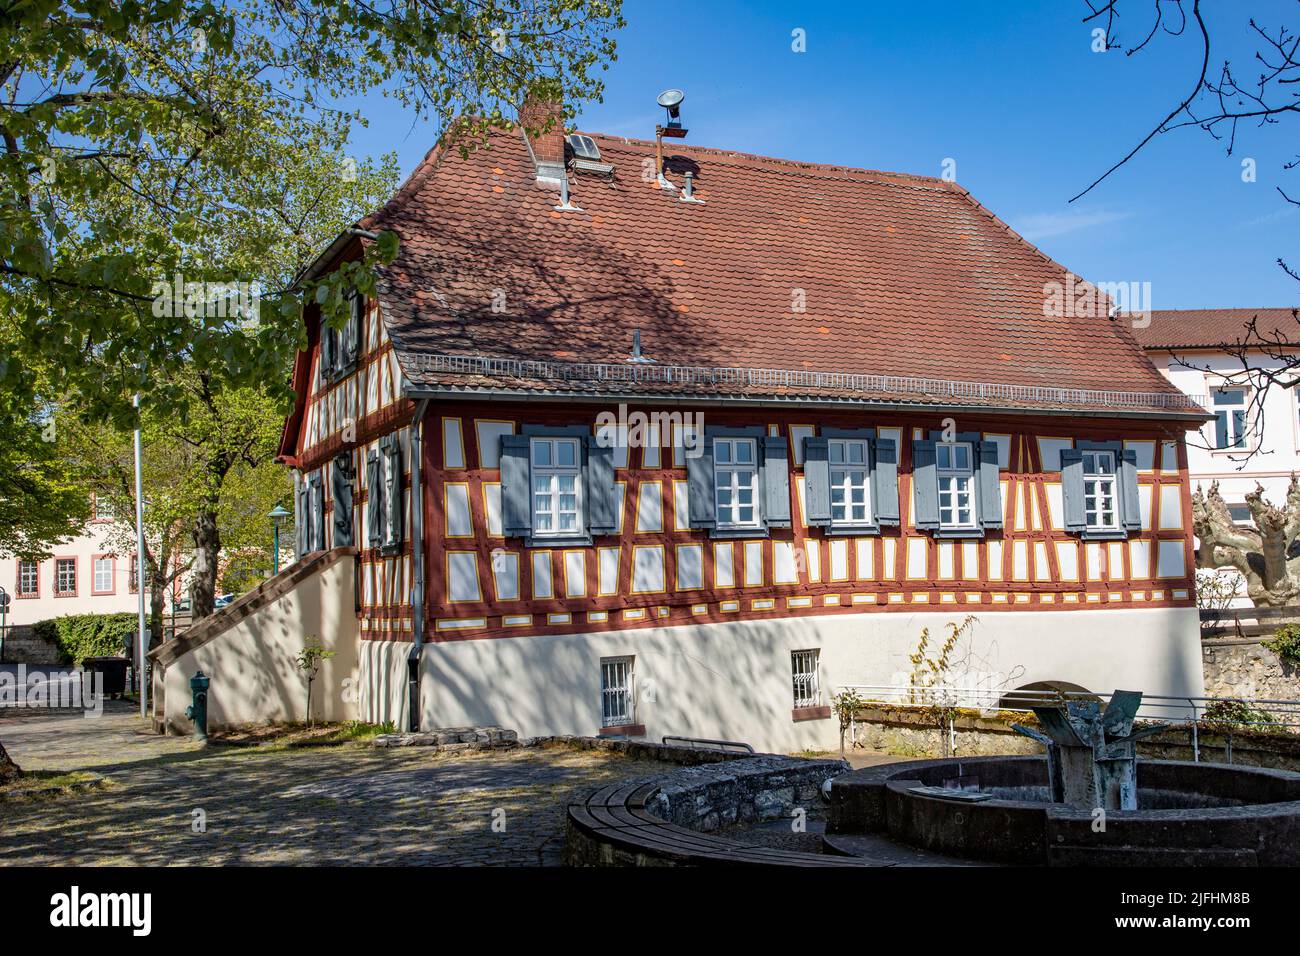 Hochheim, Alemania - 25 de abril de 2021: Antigua casa de sacerdotes con entramado de madera en Hochheim. Actualmente es propiedad de la ciudad de Hochheim. Foto de stock